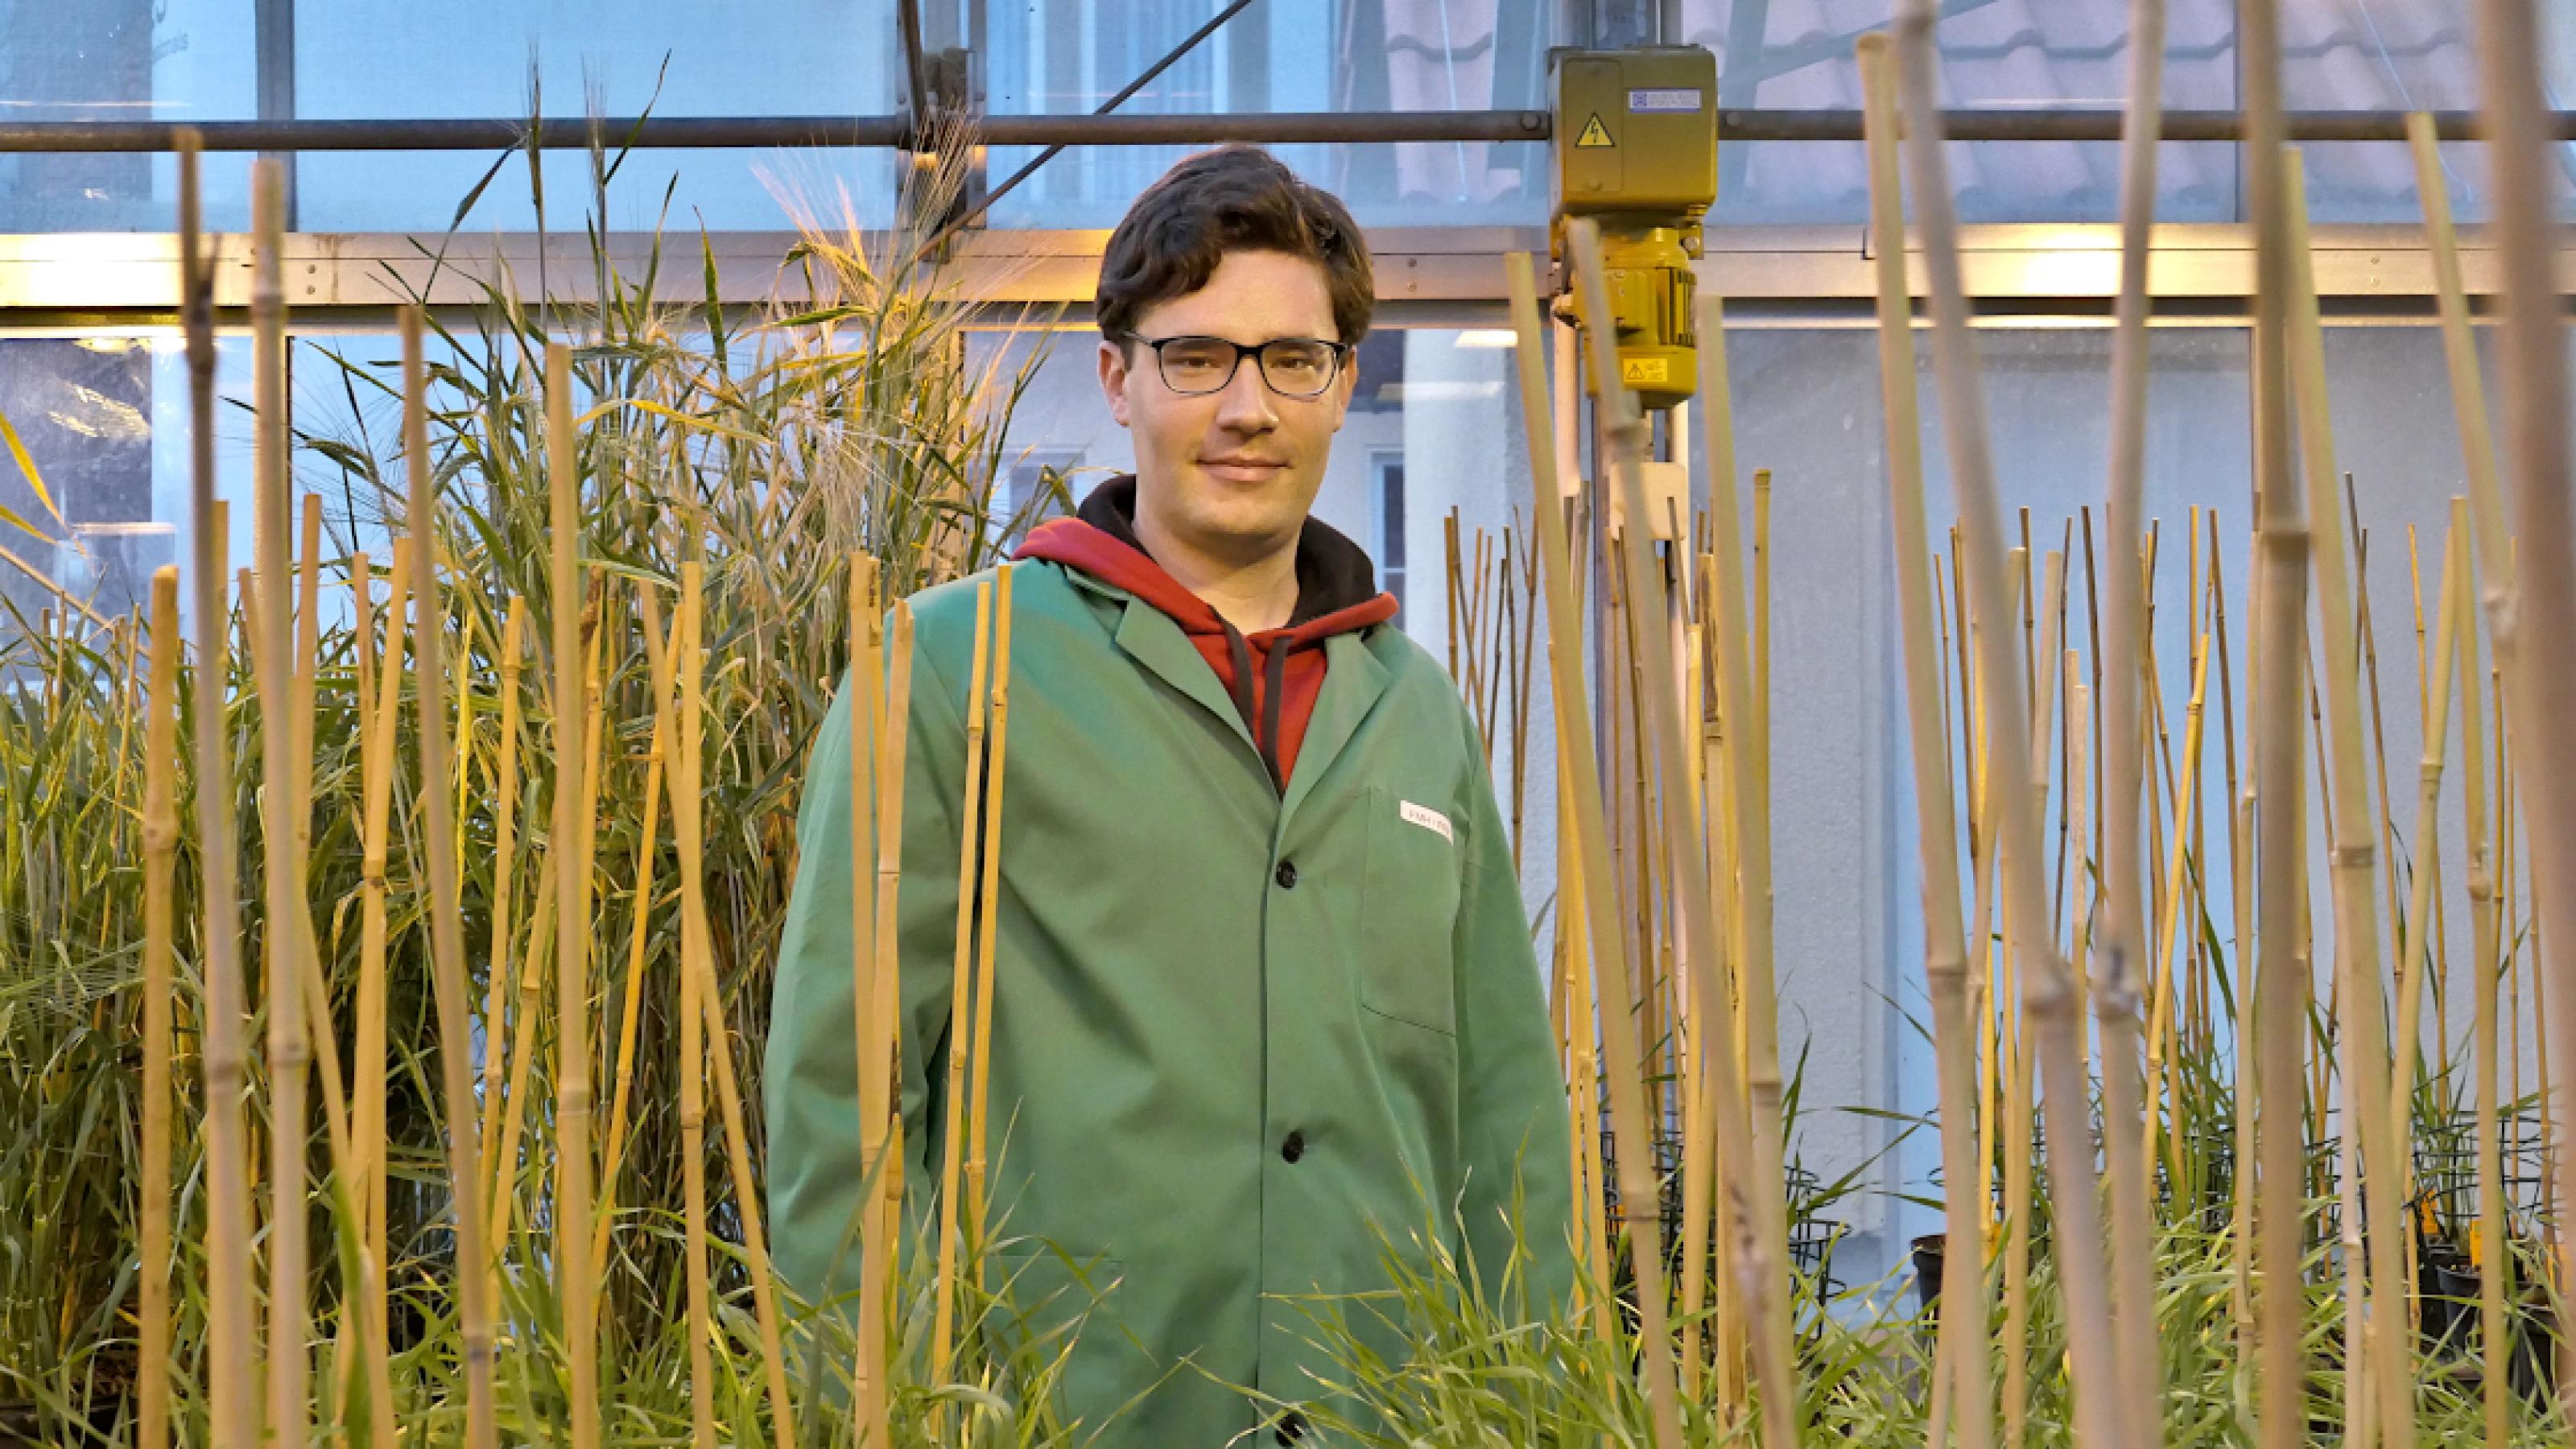 Robert Hoffie im grünen Kittel steht zwischen Getreidepflanzen, die einzeln mit dünnen Bambusstäben gestützt werden.